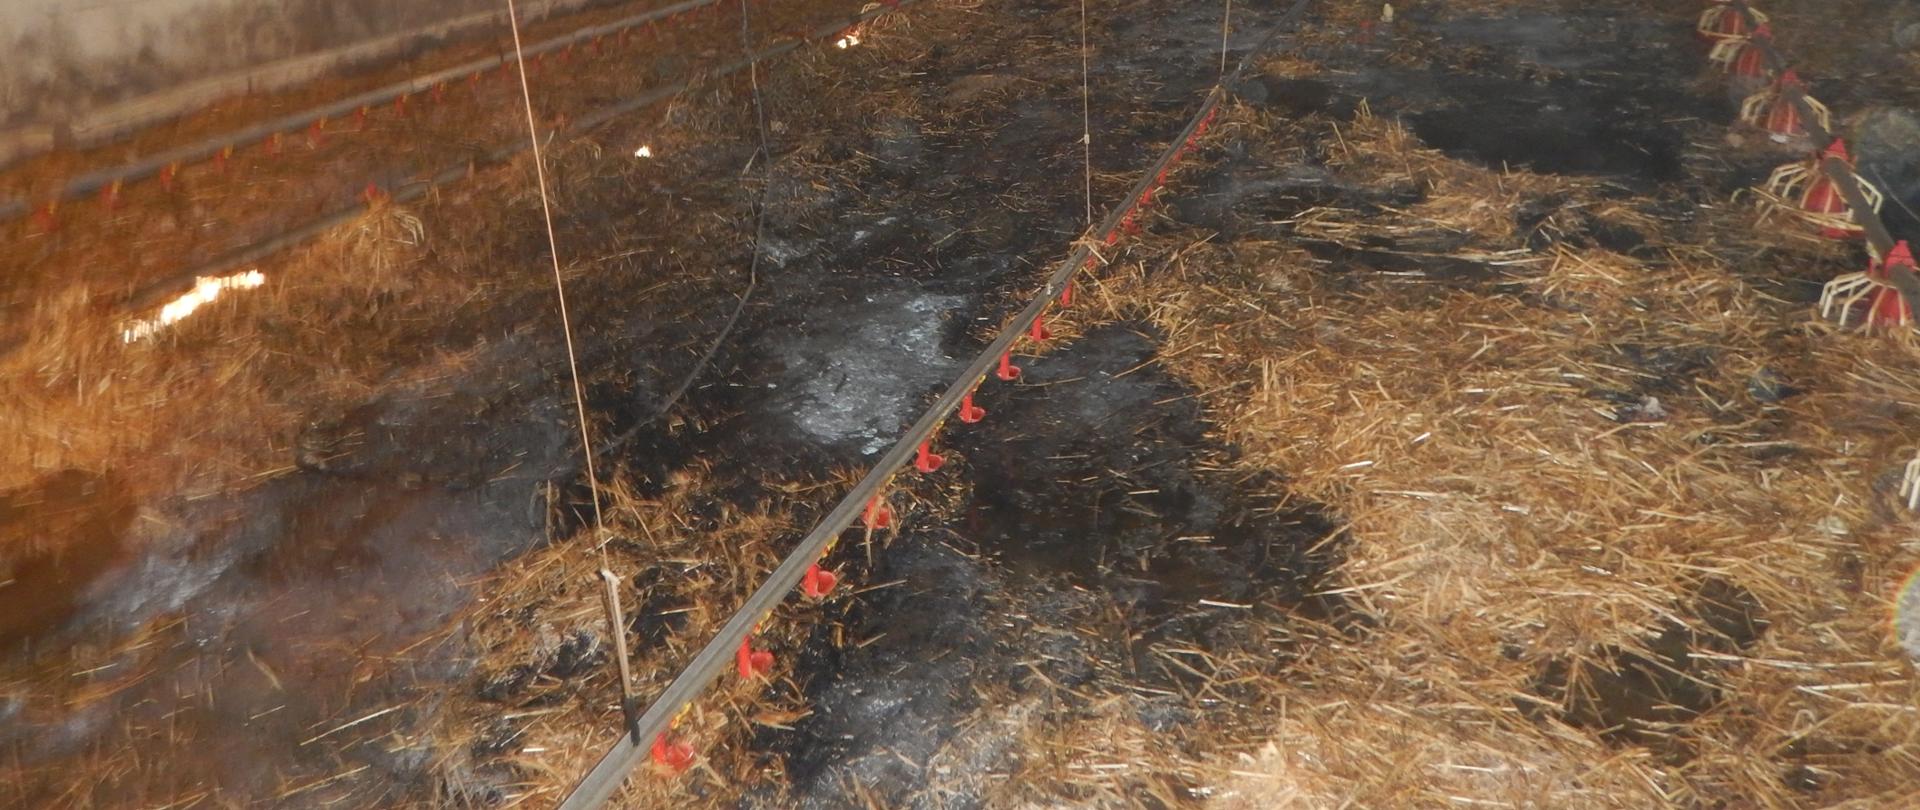 Zdjęcie przedstawia wnętrze kurnika po pożarze